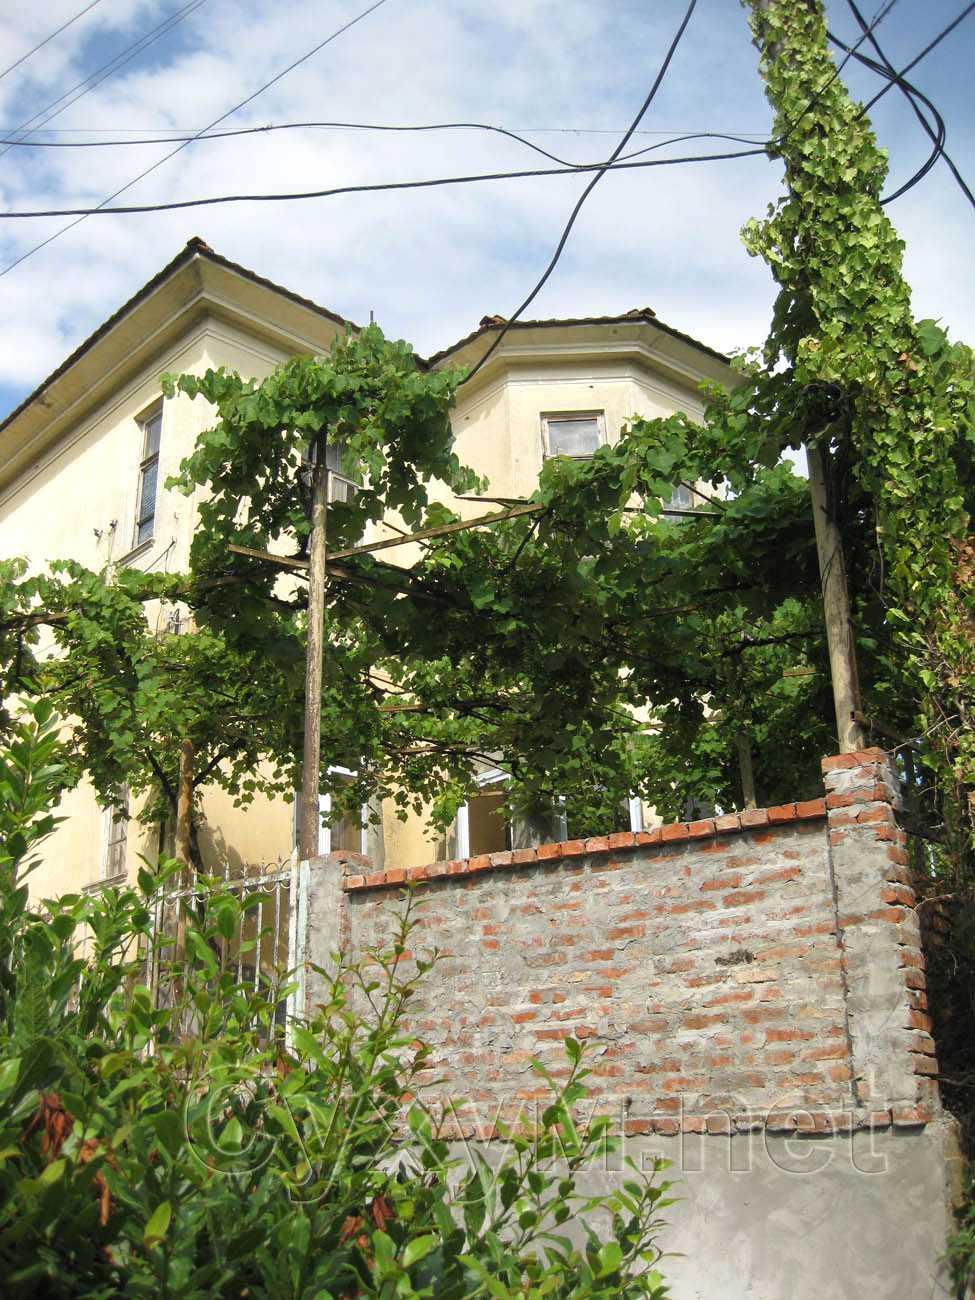 двухэтажное здание, украшенное лозами винограда